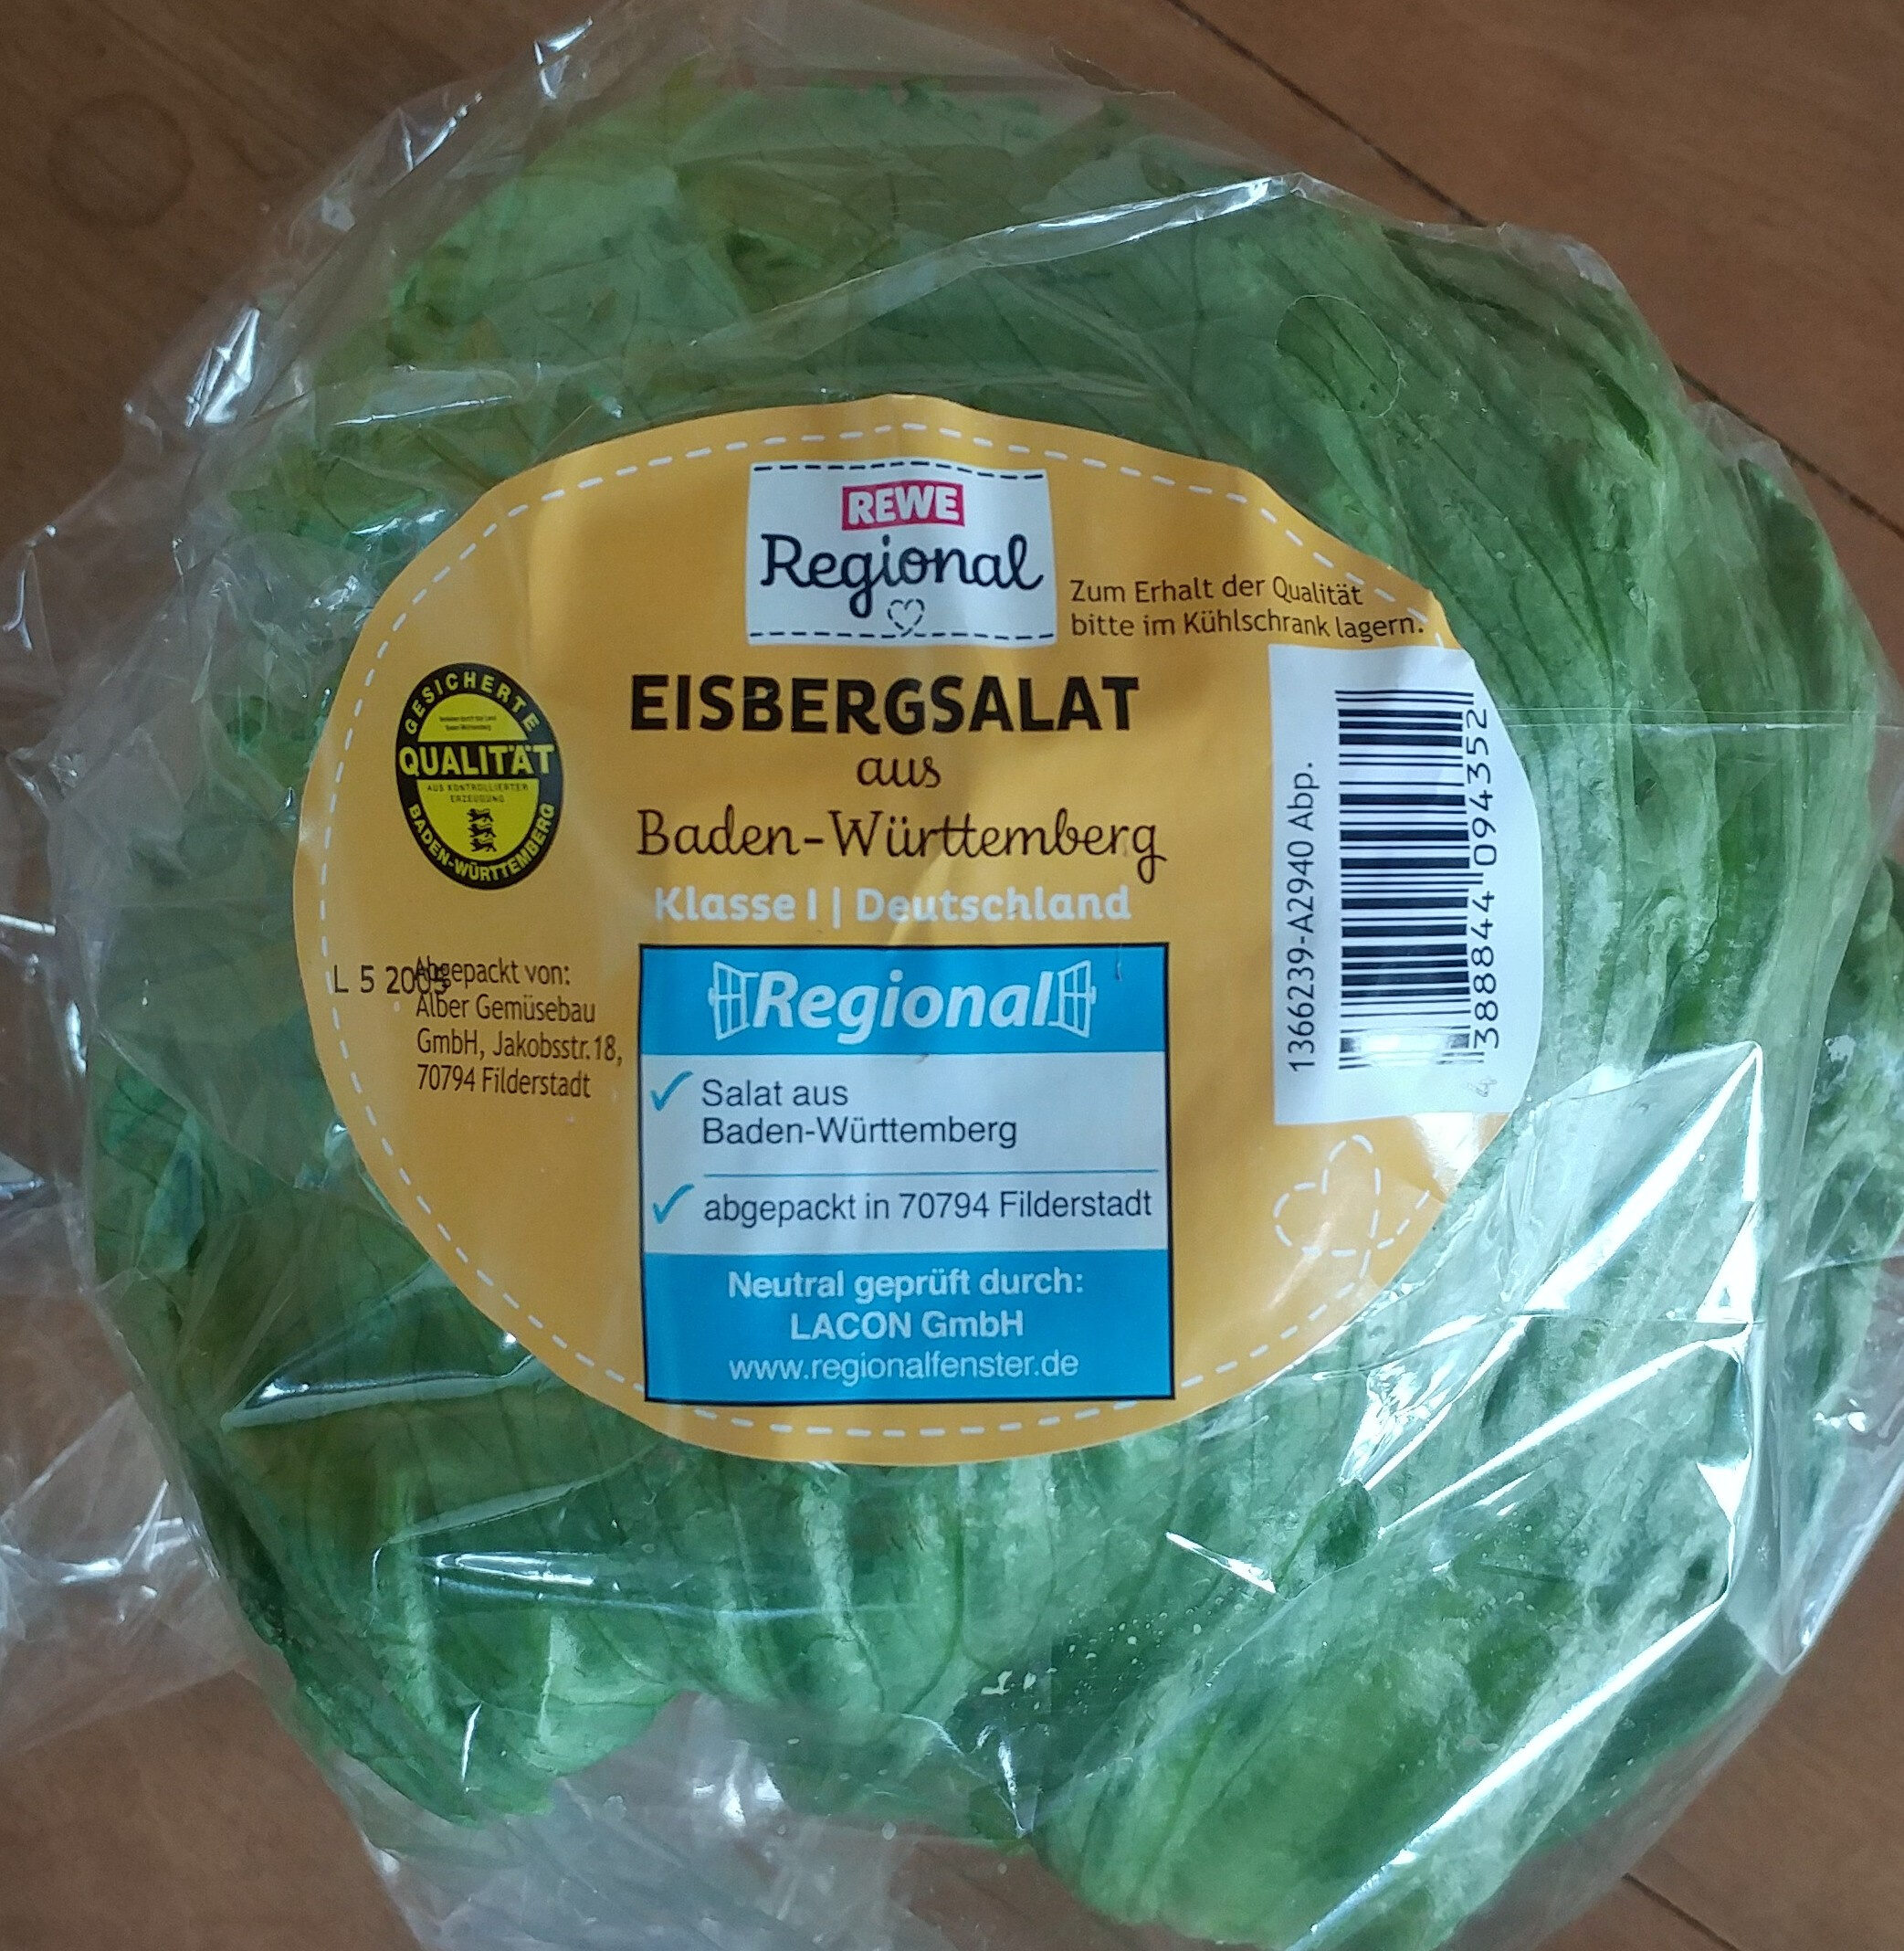 Eisbergsalat aus Baden-Württemberg - Product - de